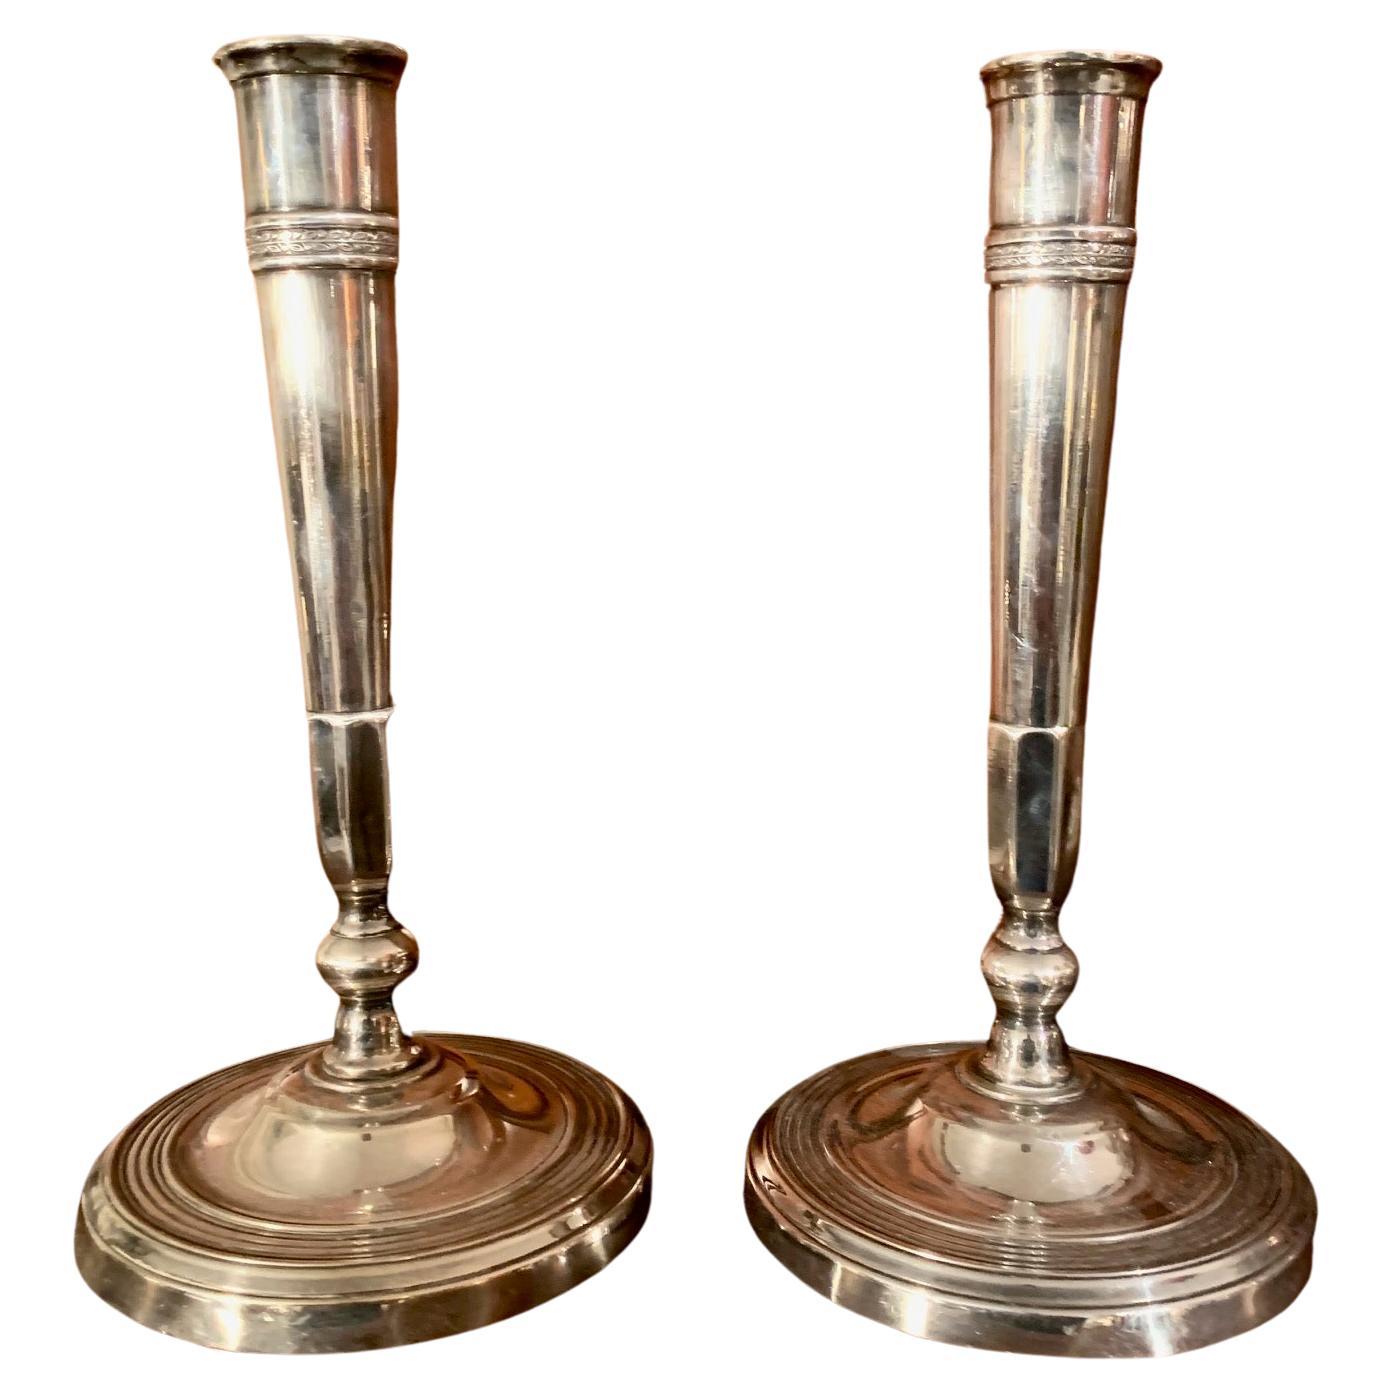 Paar französische Directory-Kerzenhalter, frühes 19. Jh., aus Silberbronze, Sockel mit konzentrischen Bögen verziert, oberer Teil mit kleinem Filigran von Pflanzenmotiven verziert.